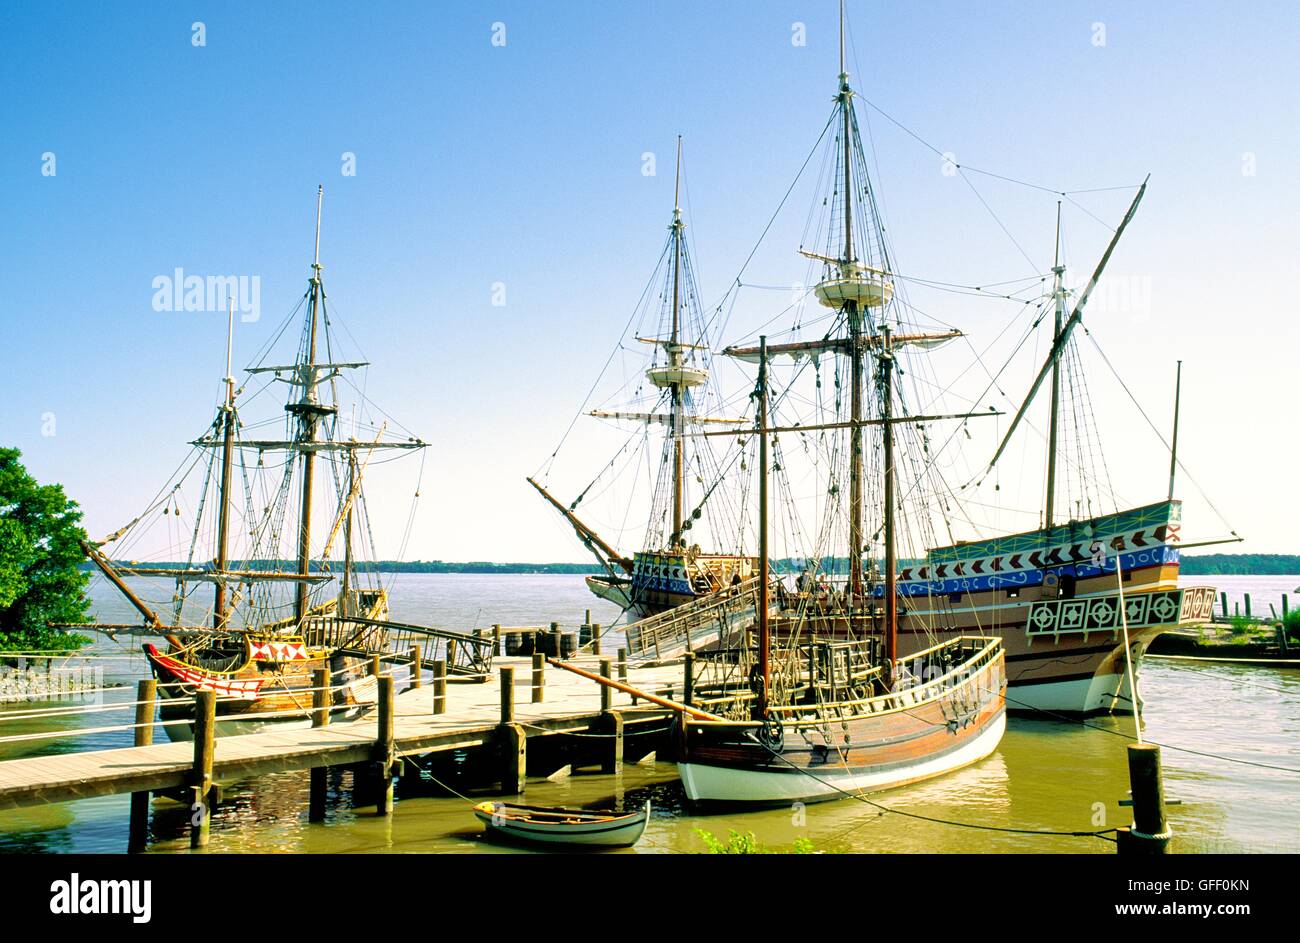 Repliche di coloni inglesi navi in cui essi si insediarono 1607 a Fort James, Jamestown sul fiume James, Virginia, Stati Uniti d'America Foto Stock